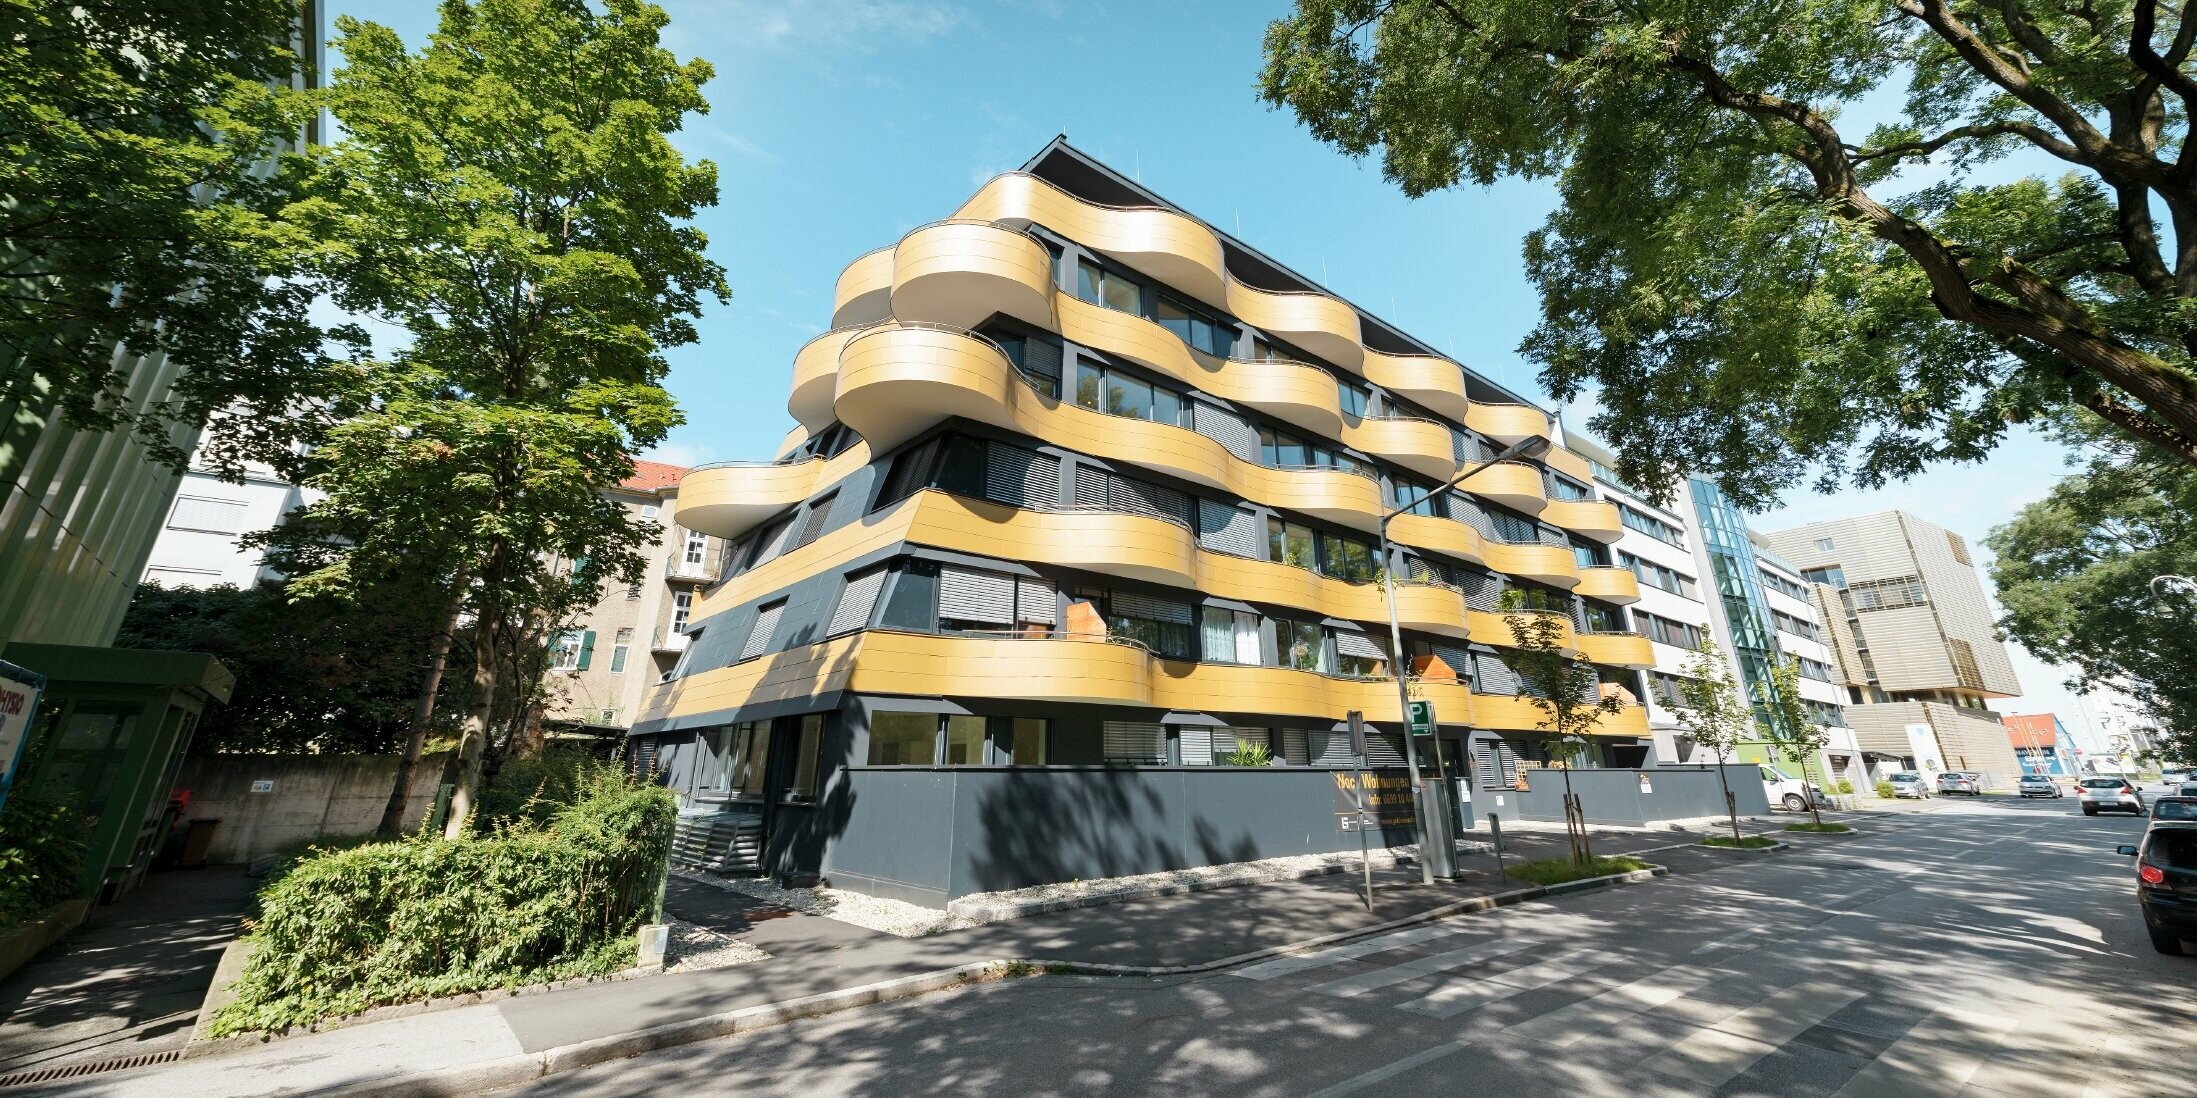 Wohnhausanlage "goldene Welle" in Graz, Österreich, mit der Aluminium Verbundplatte in Gold, die Balkone wurden in Wellen gerundet 